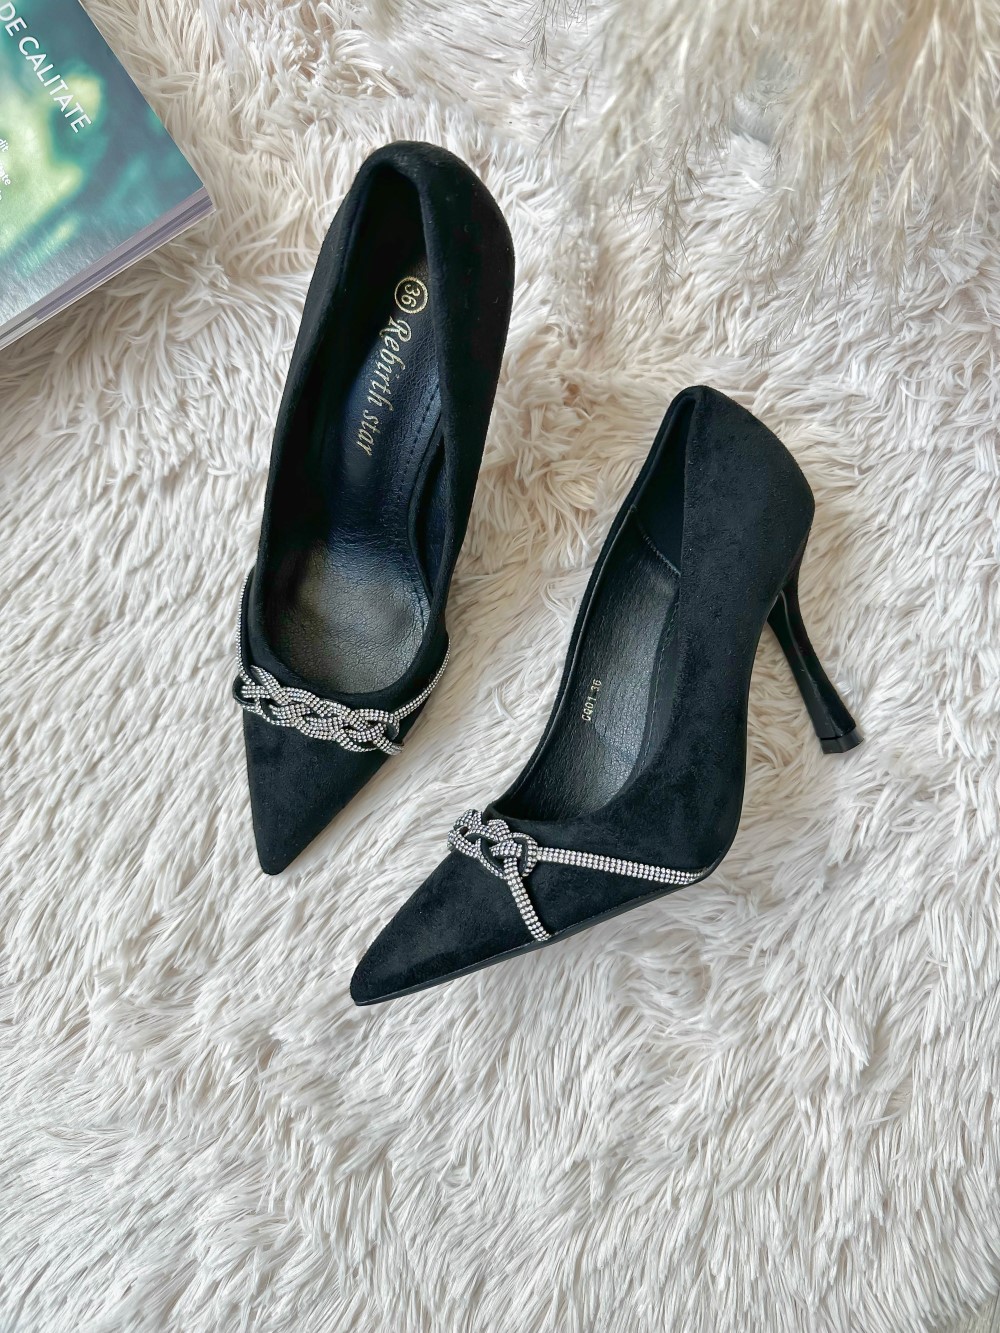 Pantofi eleganti dama cu toc subtire negri GQ01